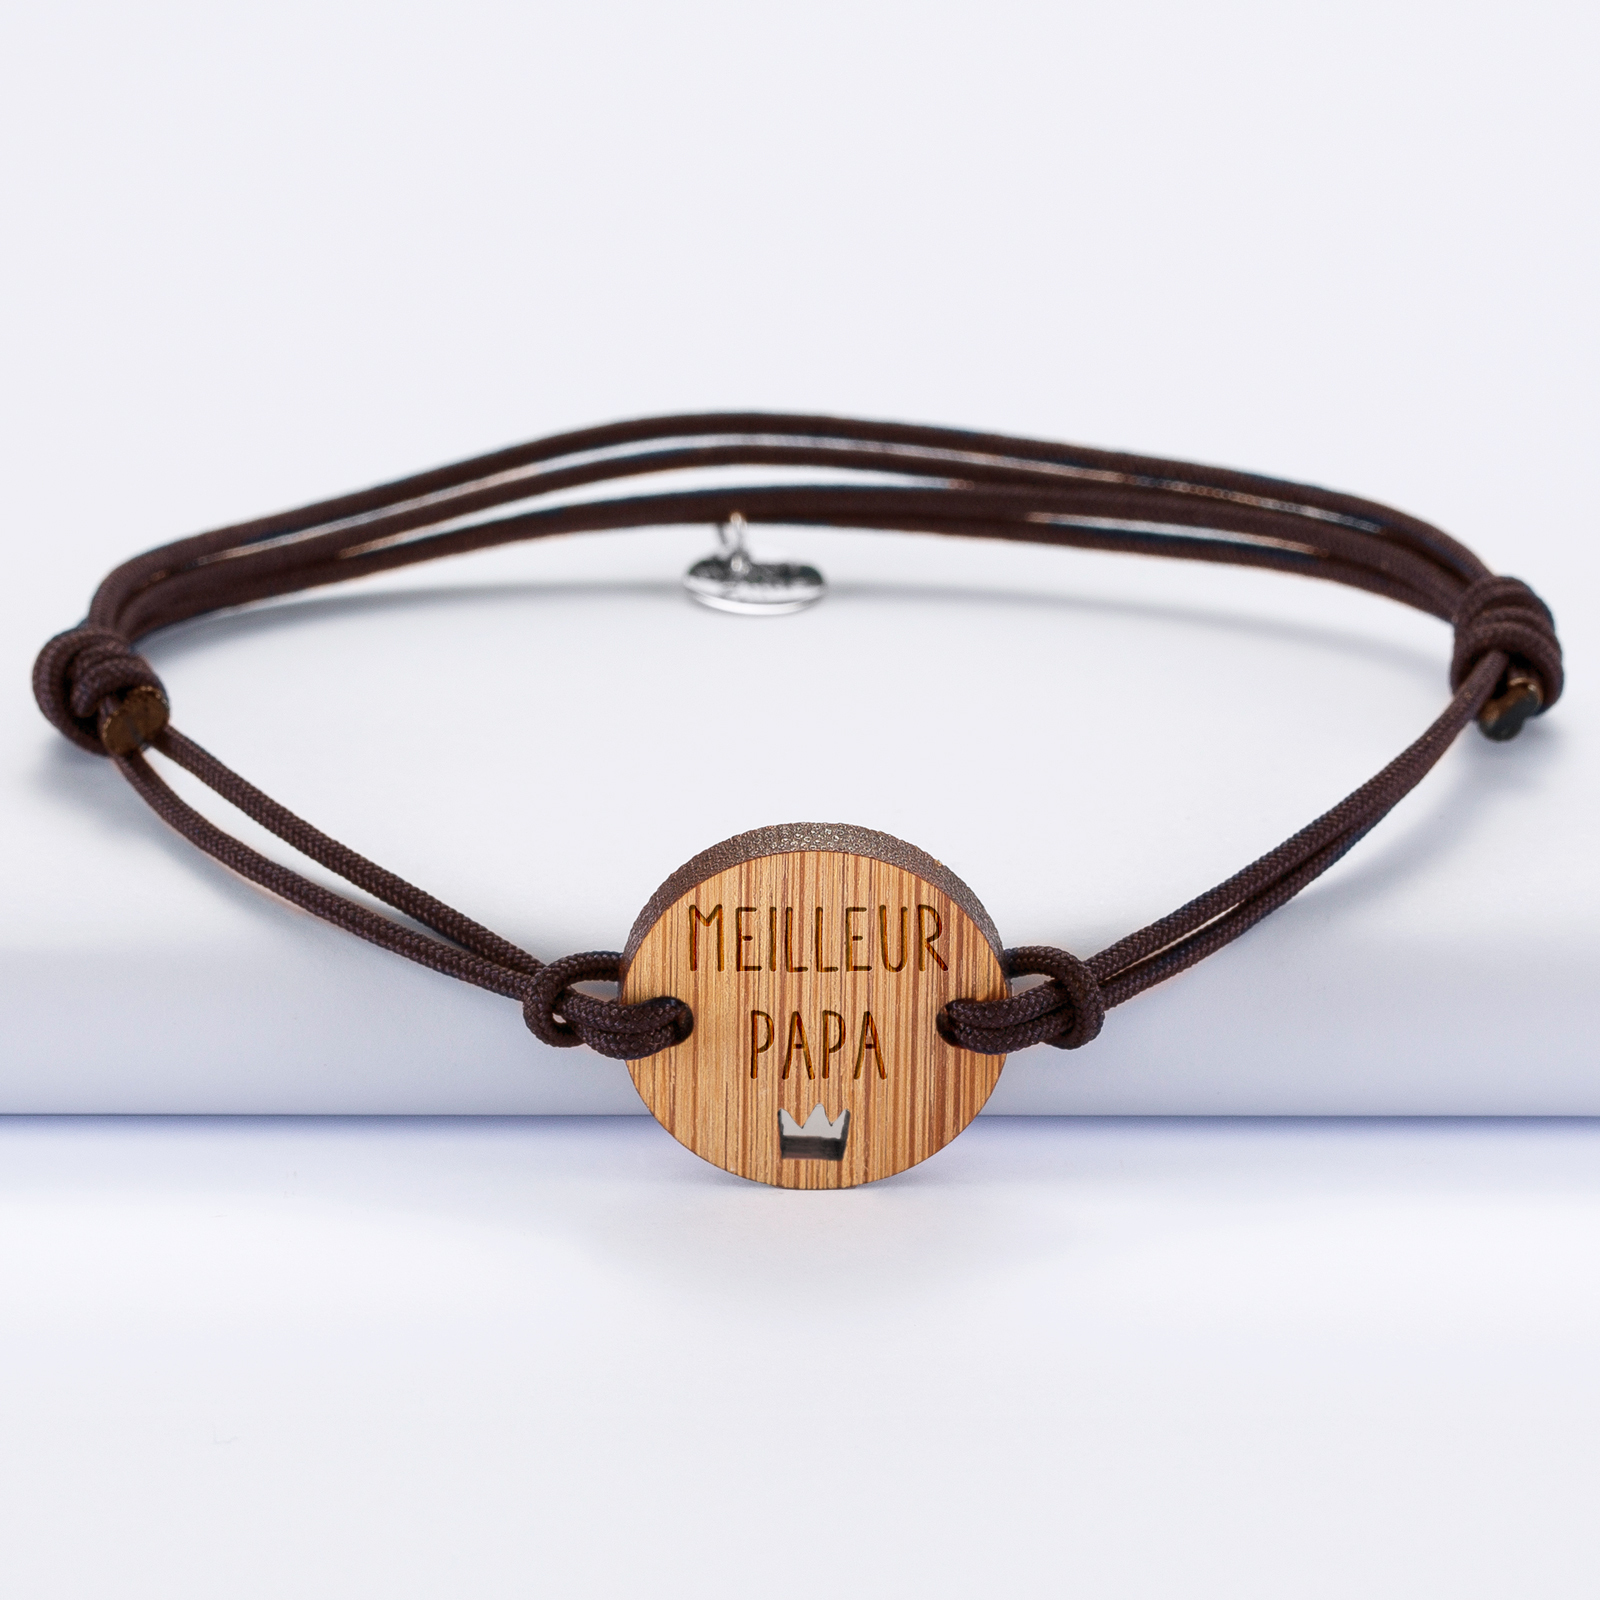 Bracelet homme médaille gravée bois ronde 21 mm - Edition spéciale "Meilleur papa" marron